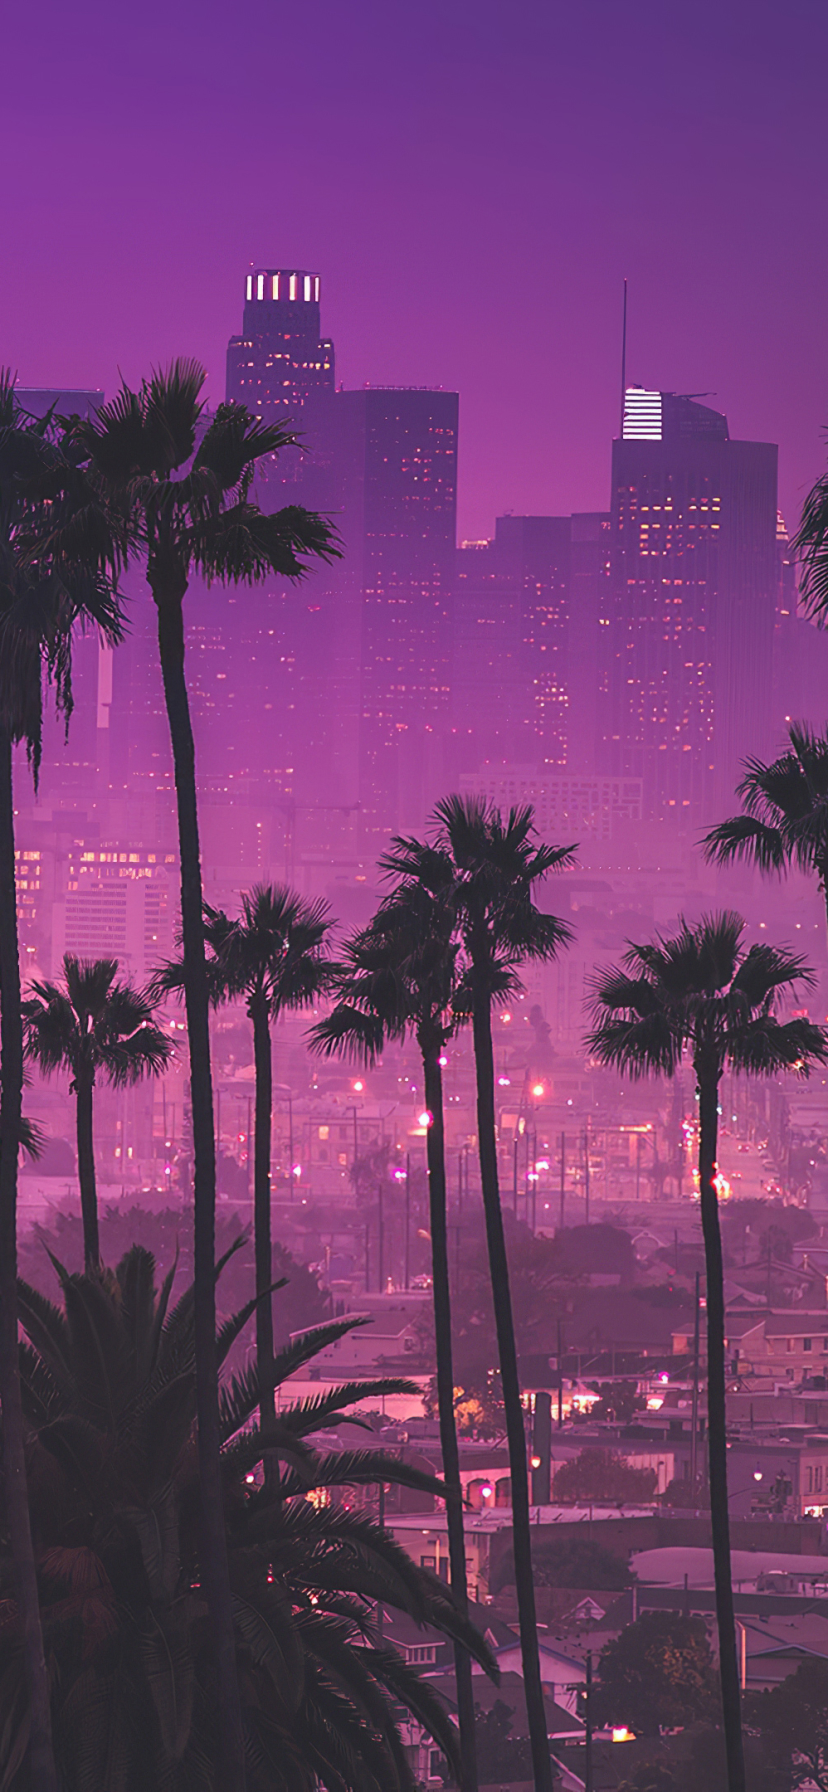 Palm trees against purple nightlights - Los Angeles, California